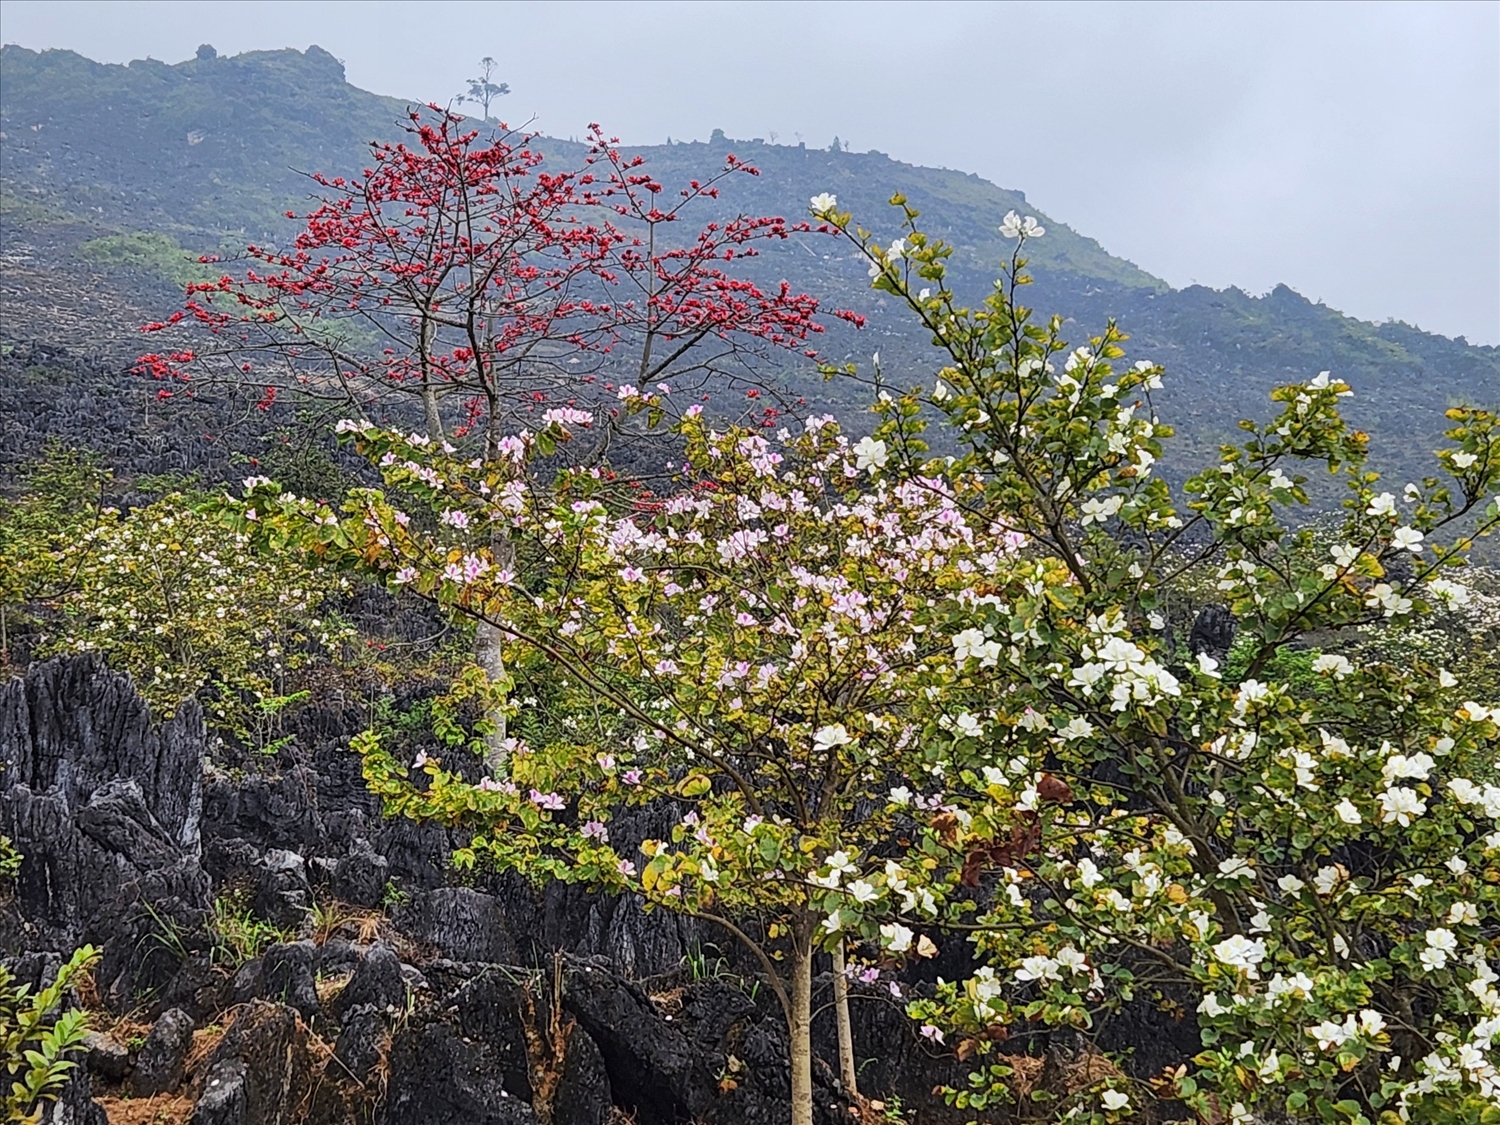 Hoa ban và hoa mộc miên cùng nở tô điểm thêm vẻ đẹp của khu vực Mê cung đá xã Khâu Vai